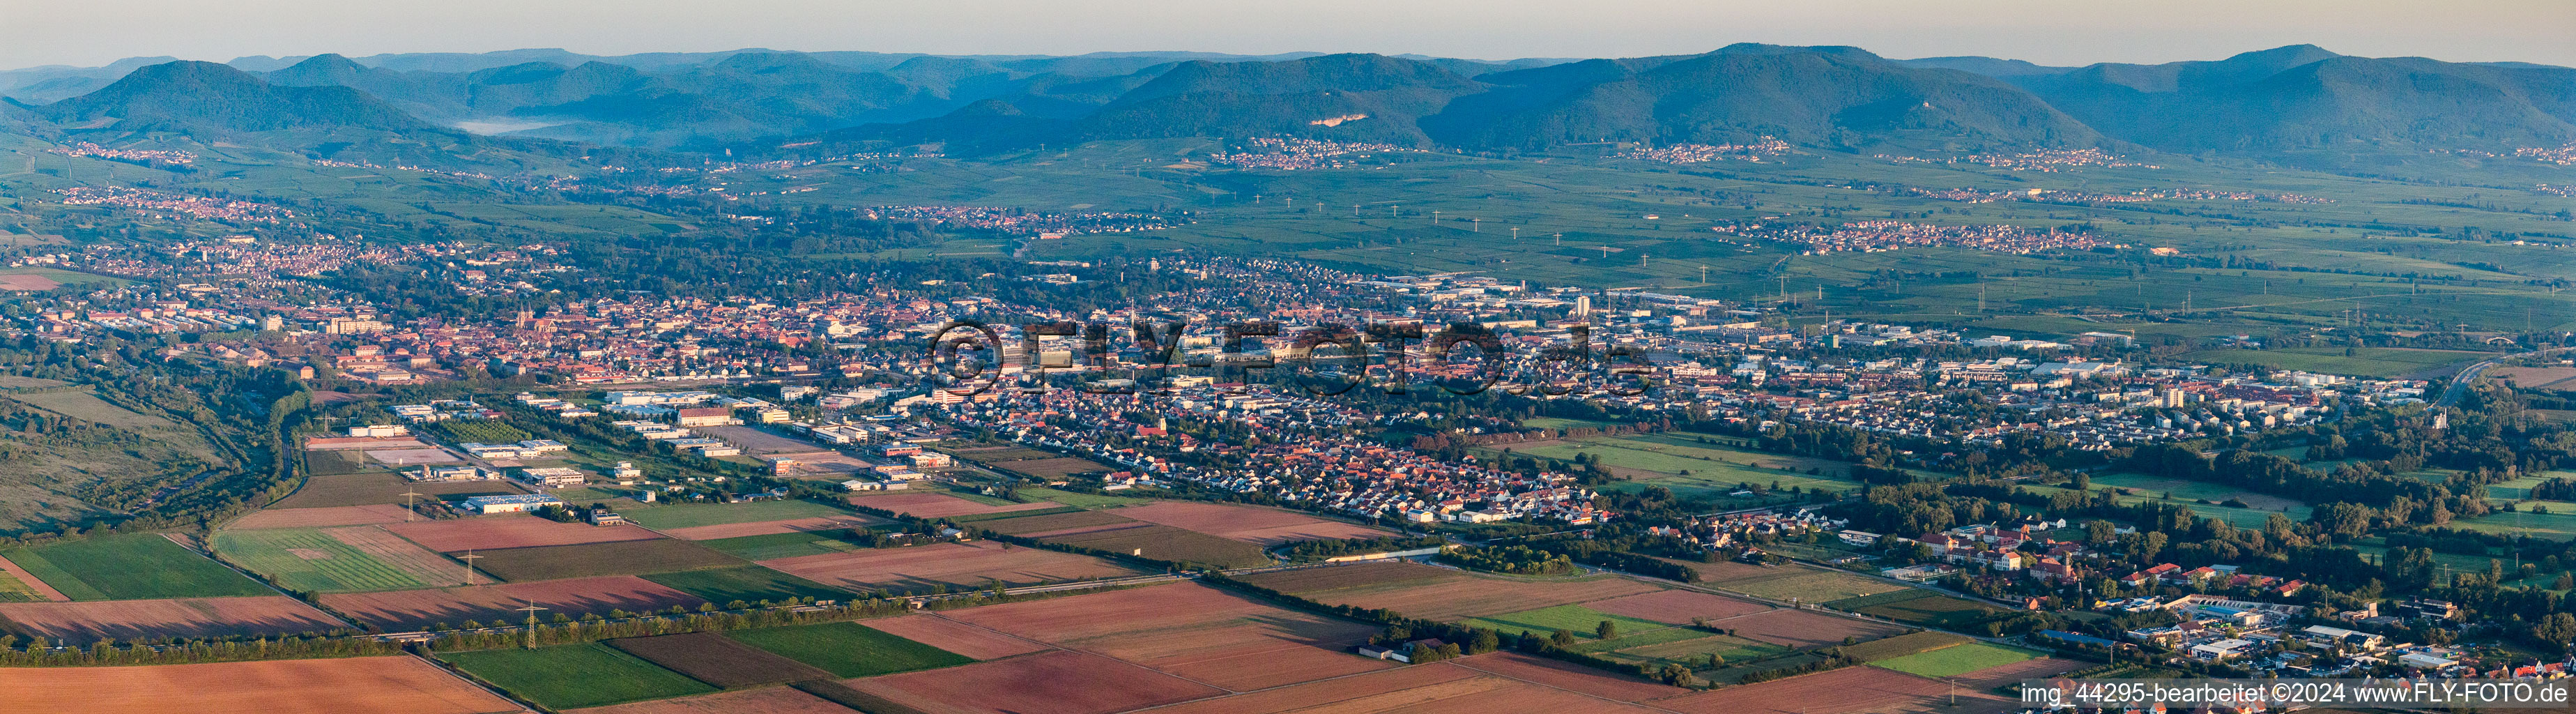 Vue aérienne de Zone urbaine en perspective panoramique avec périphérie et centre-ville à le quartier Queichheim in Landau in der Pfalz dans le département Rhénanie-Palatinat, Allemagne